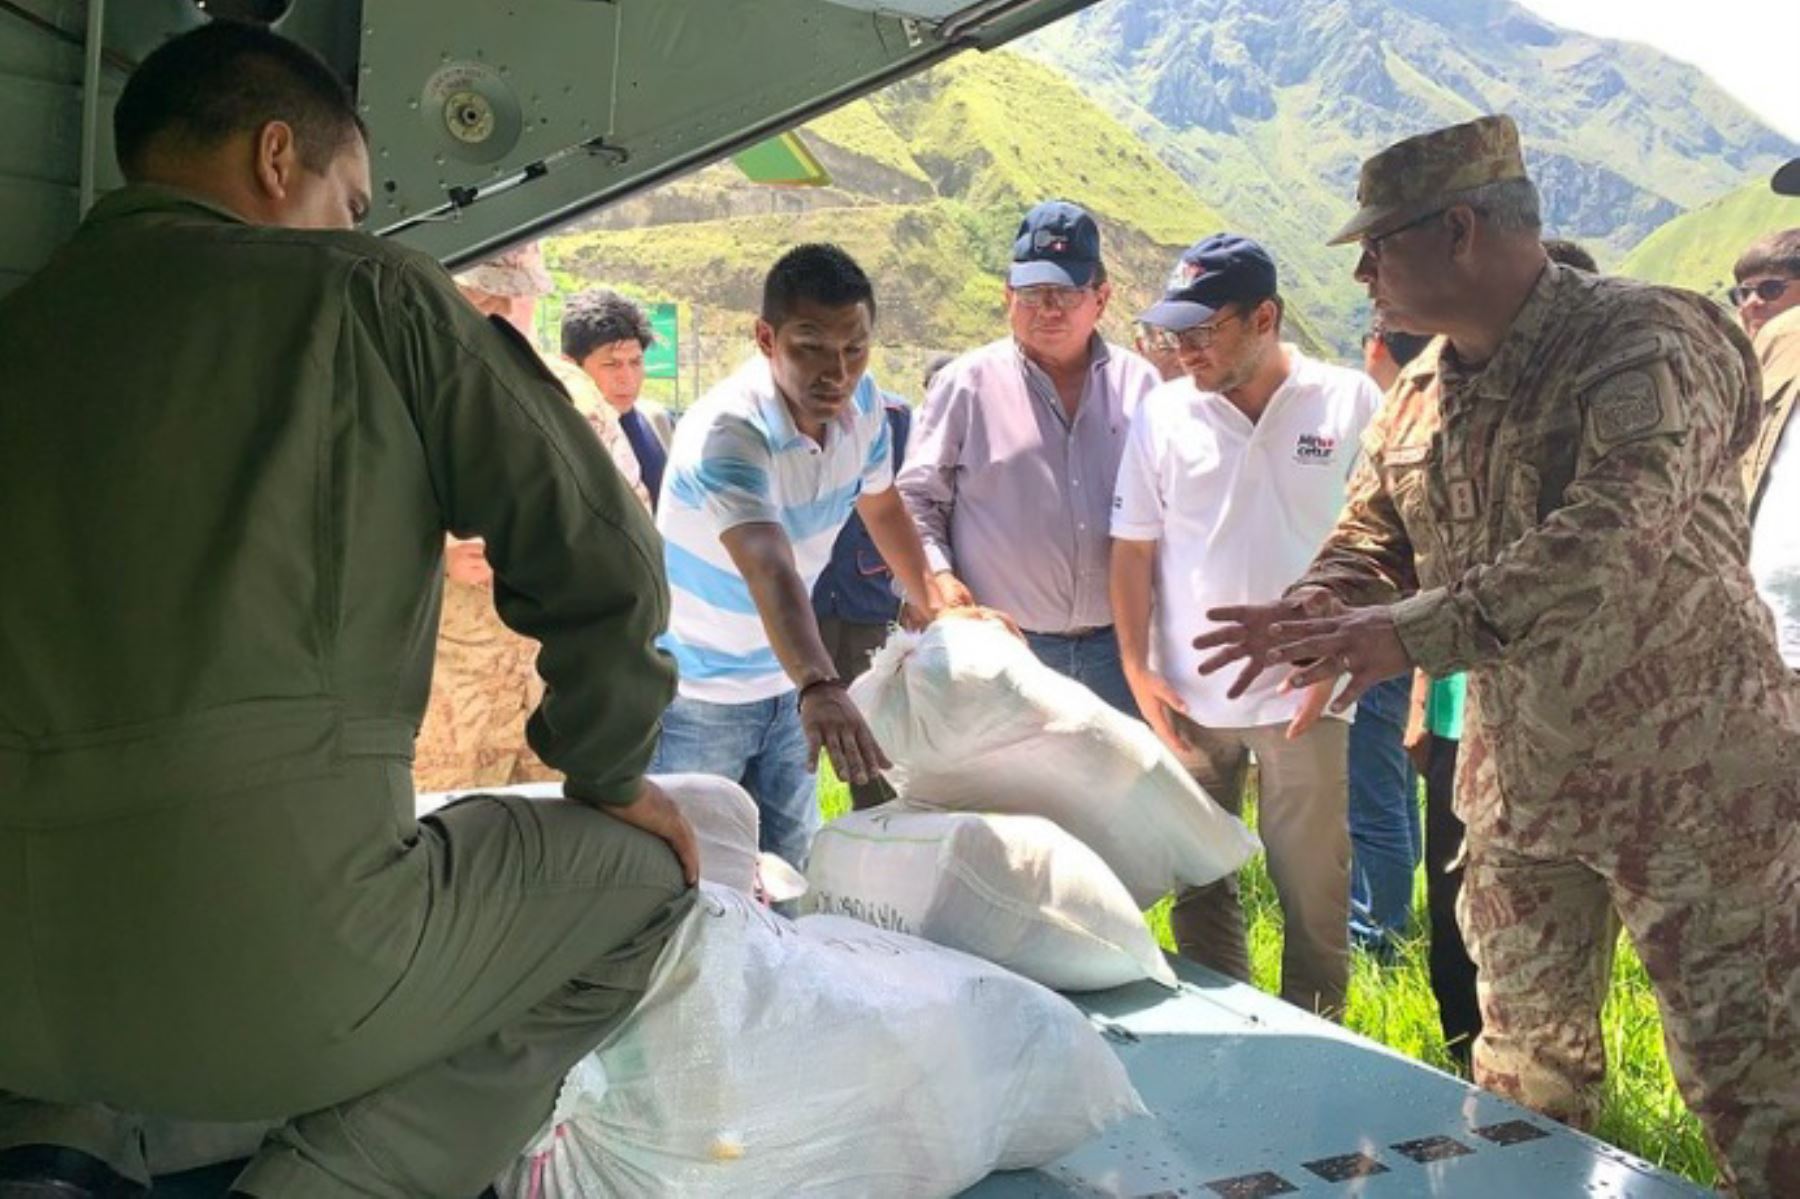 El ministro de Comercio Exterior y Turismo, Edgar Vásquez, sostuvo hoy que se viene priorizando el traslado de heridos y envío de ayuda humanitaria a los afectados por el huaico ocurrido en el distrito de Santa Teresa, en la provincia de La Convención, región Cusco.